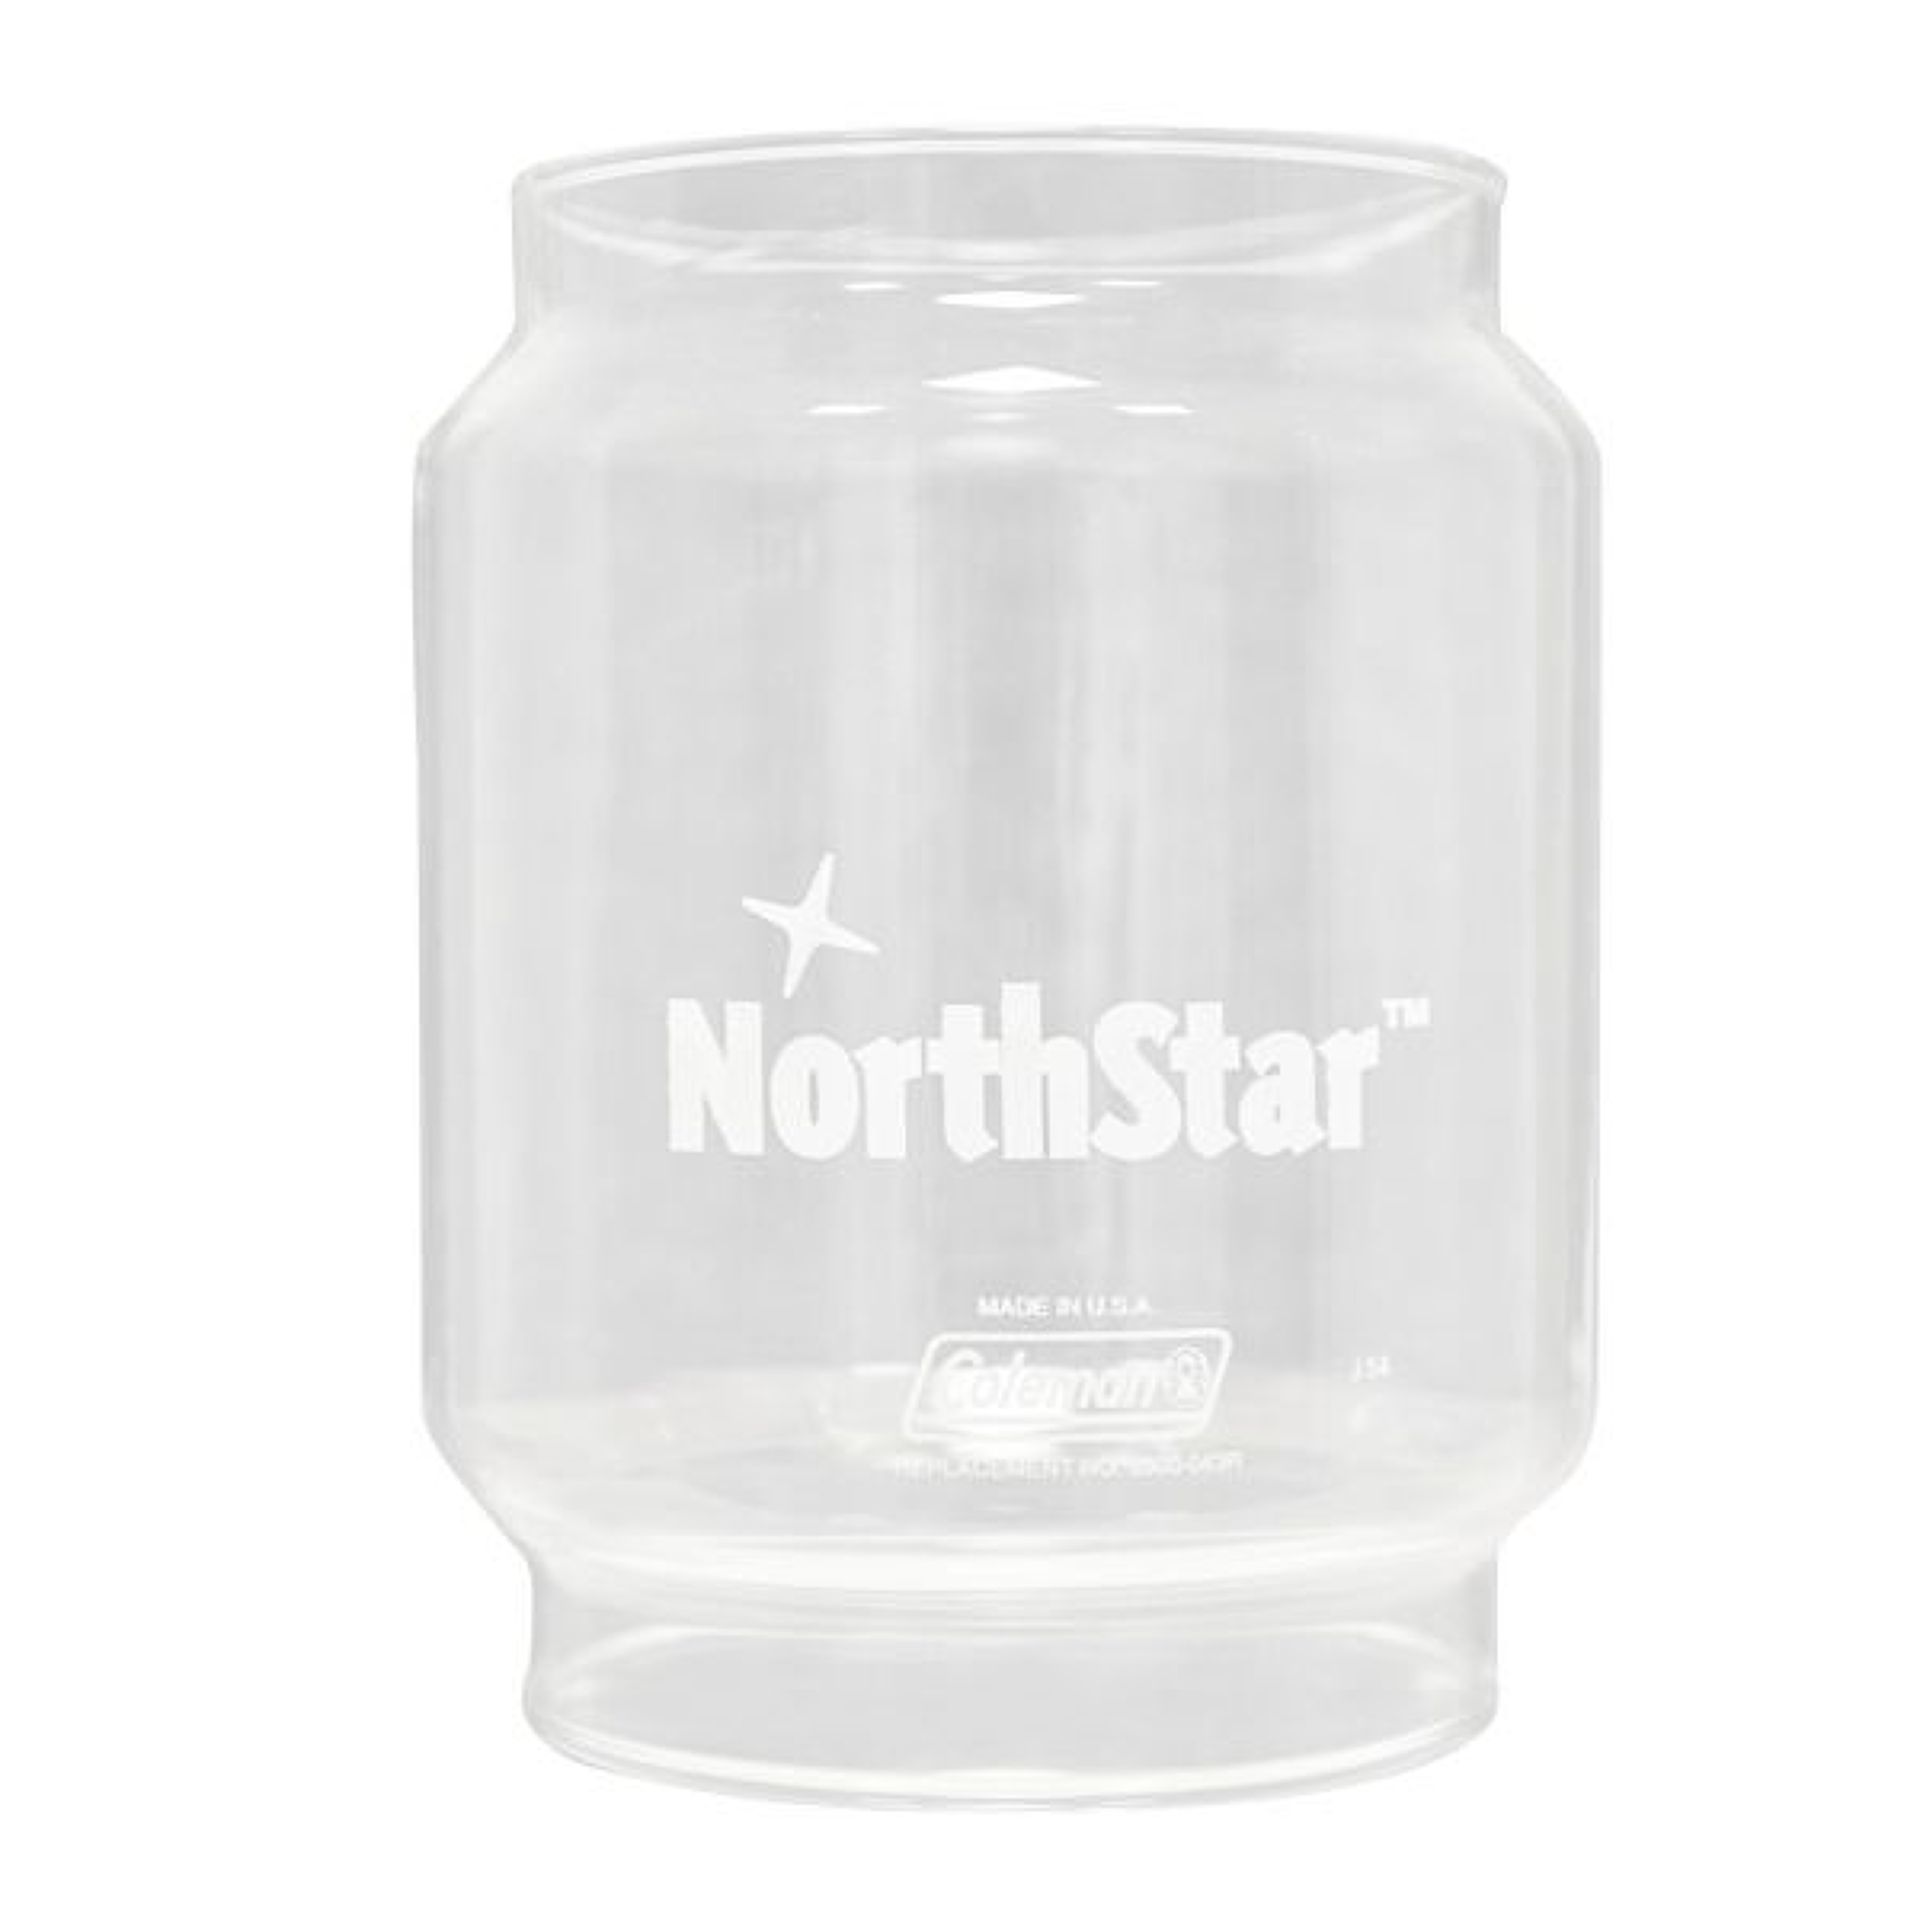 Náhradní sklo pro lampu Northstar